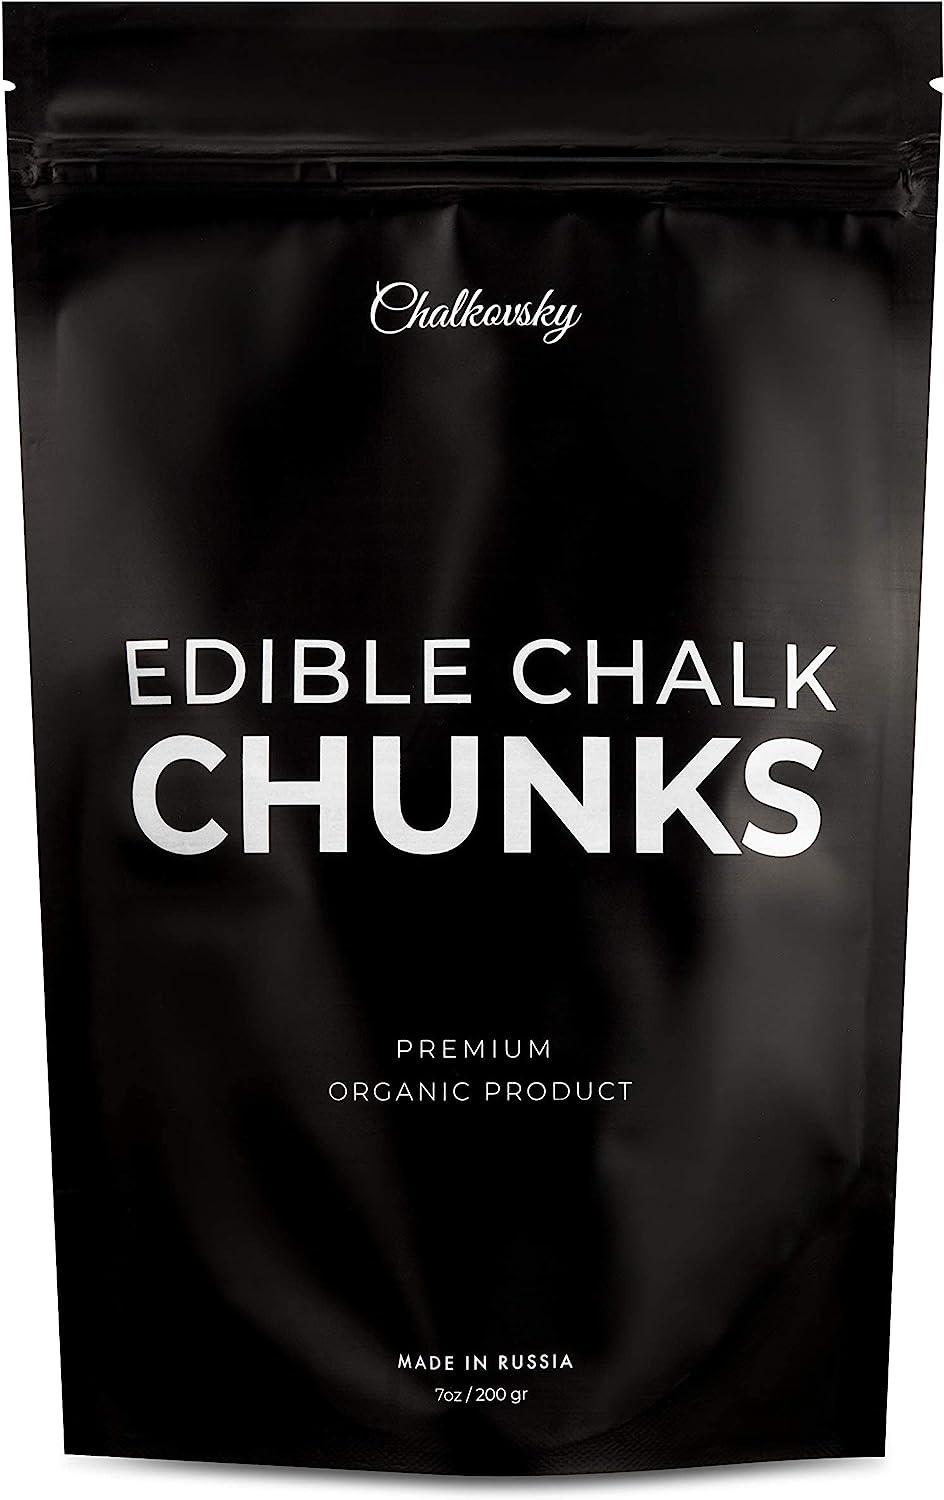 Edible chalk : White Mountain Edible Chalk chunks